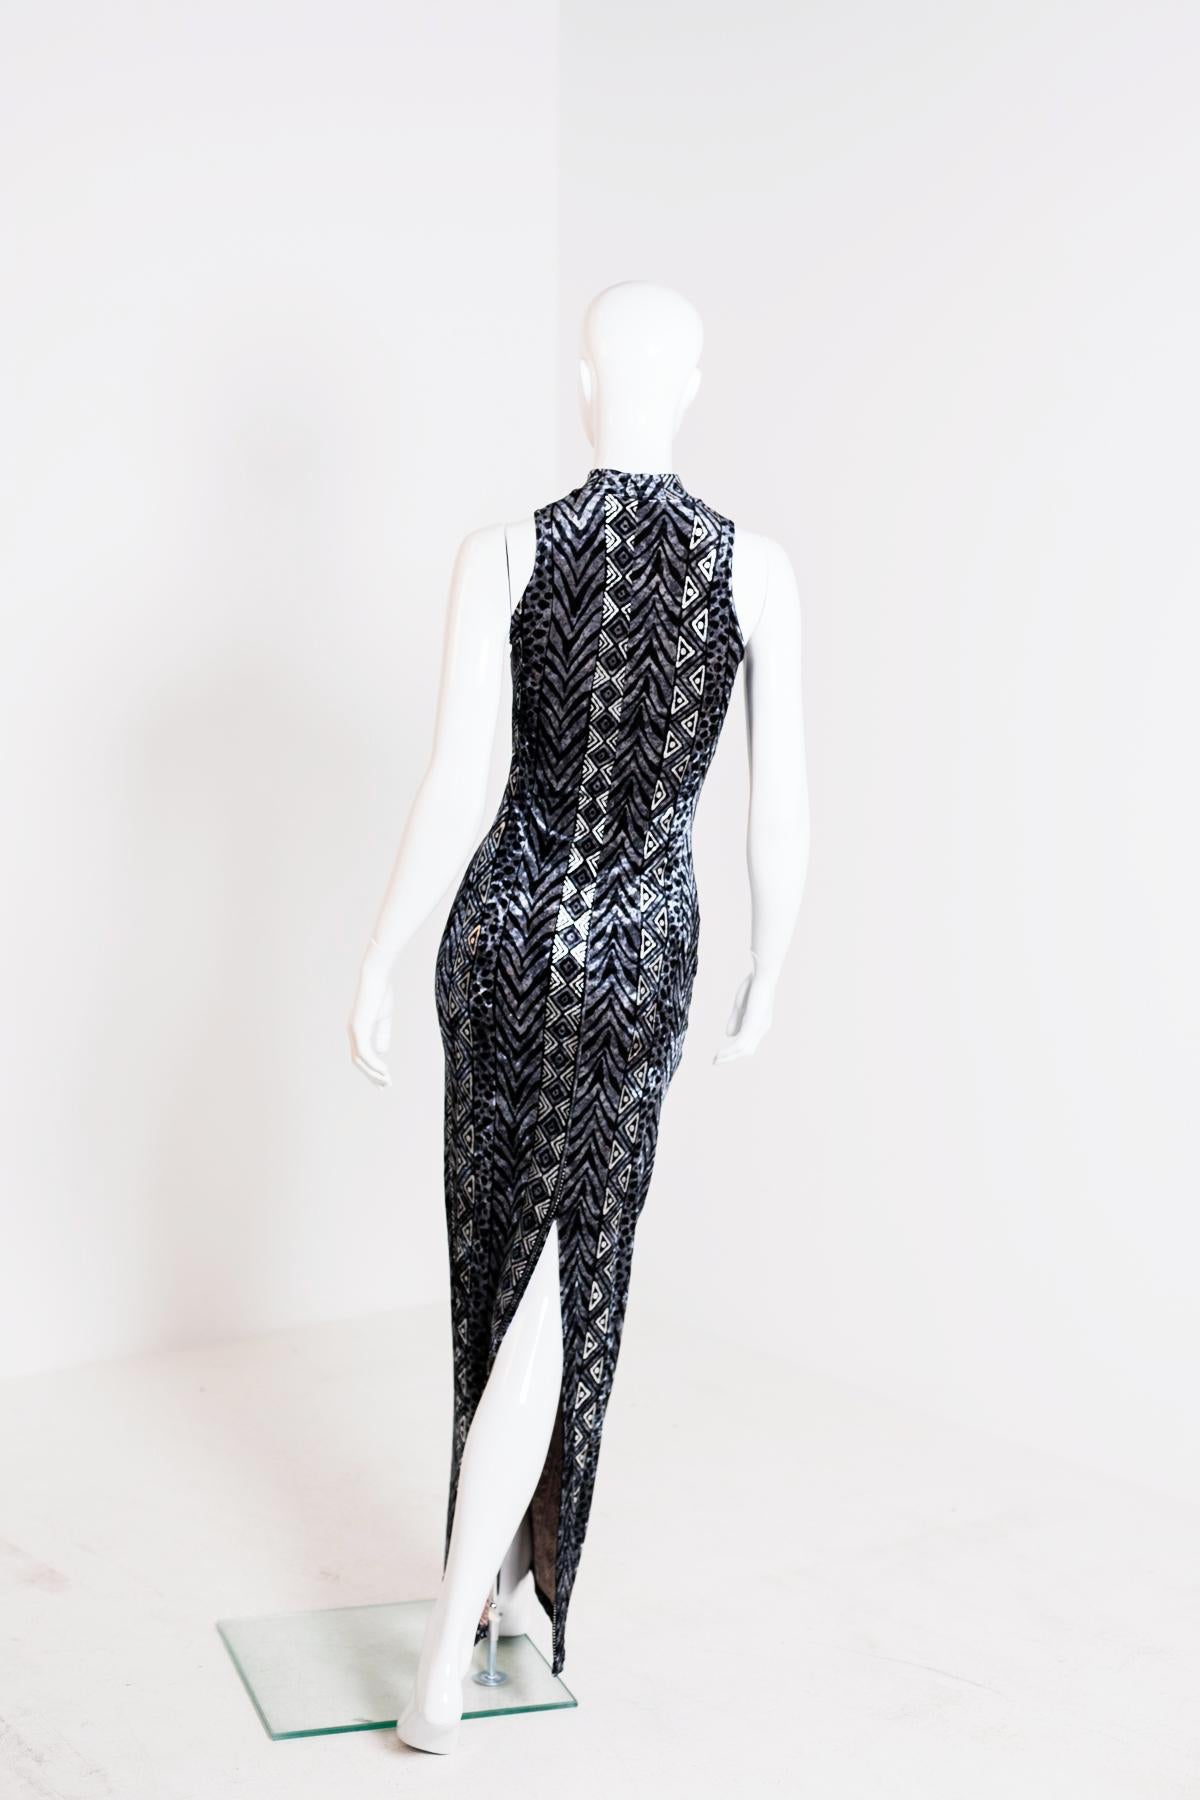 Faust Glittery Black Elegant Dress For Sale 4